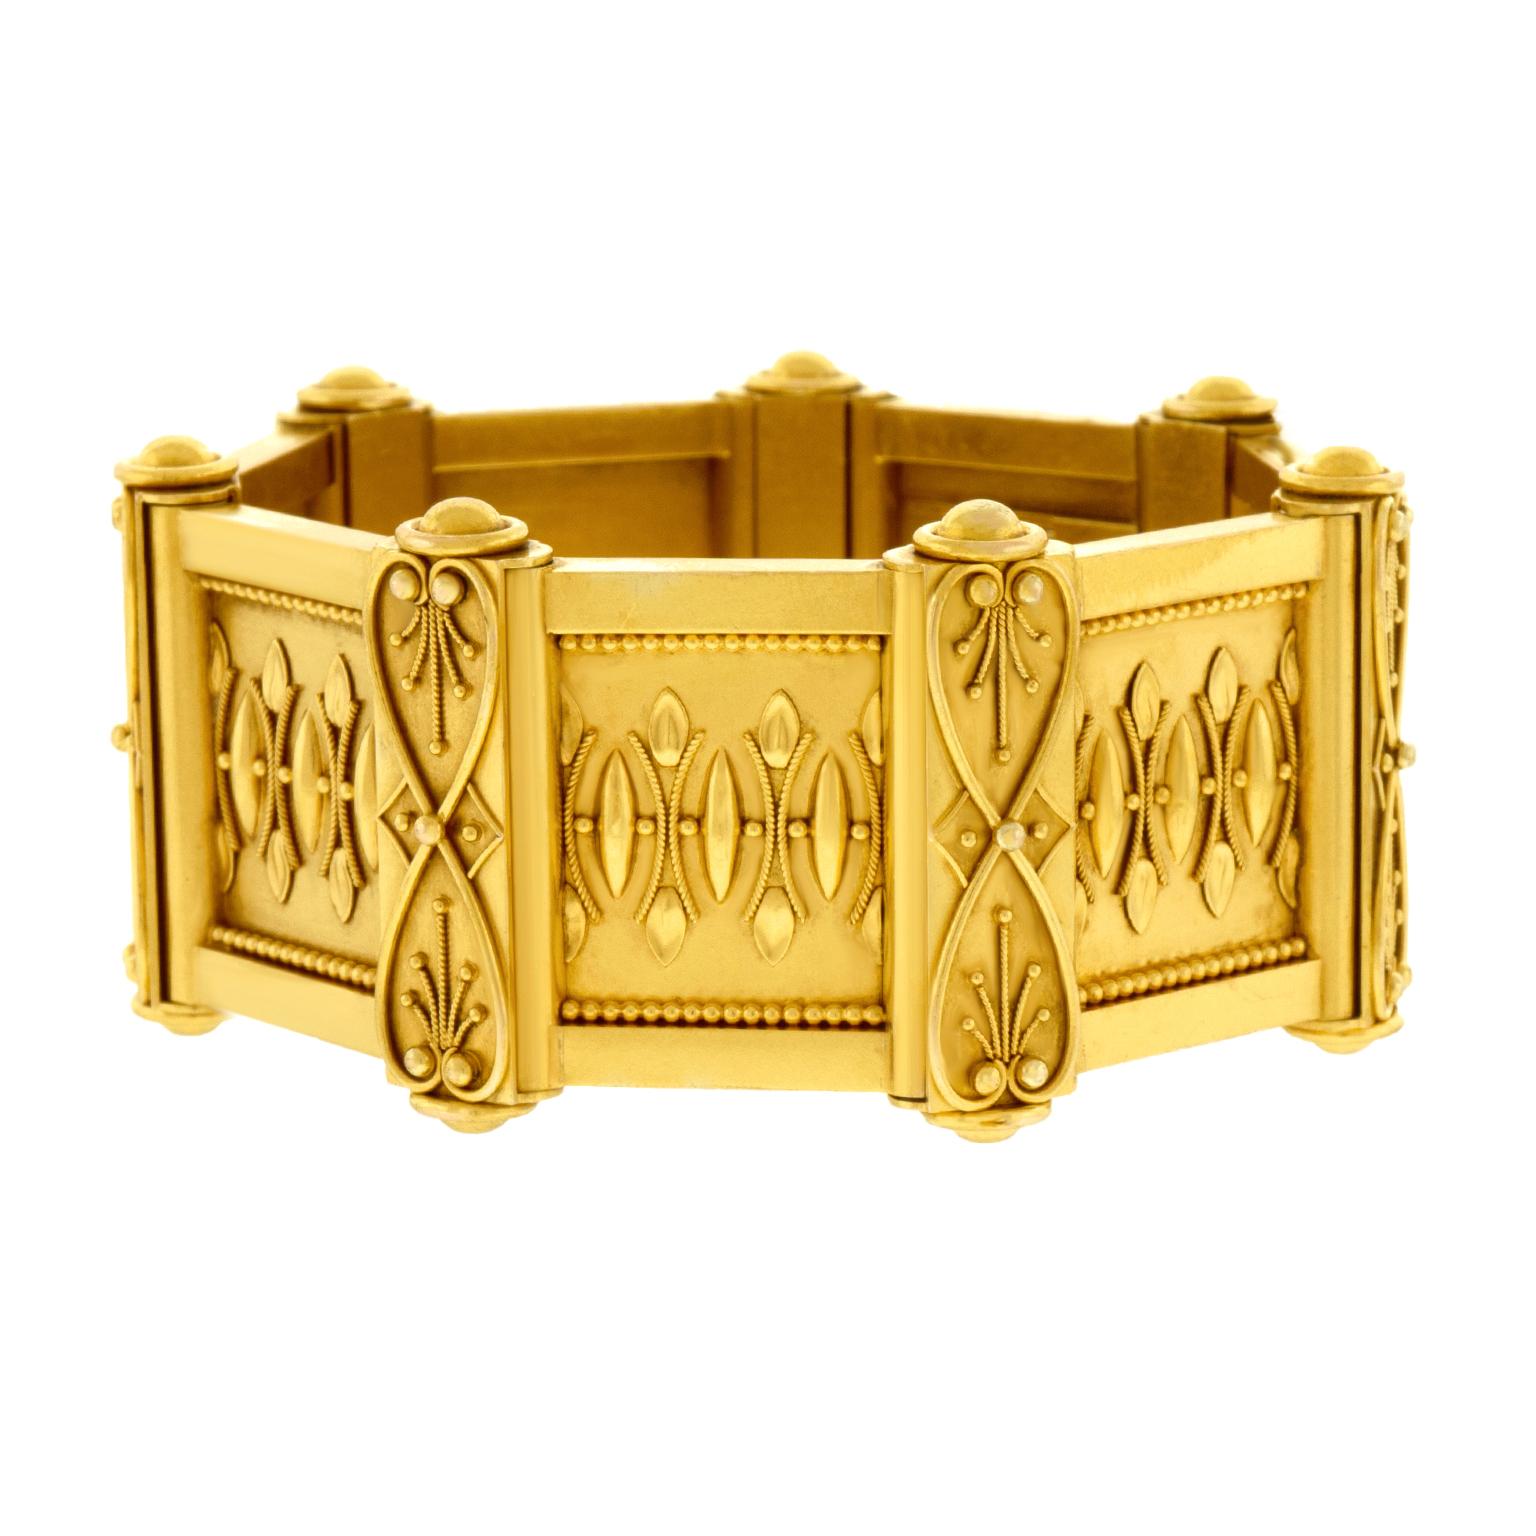 Antique Renaissance Revival Gold Bracelet